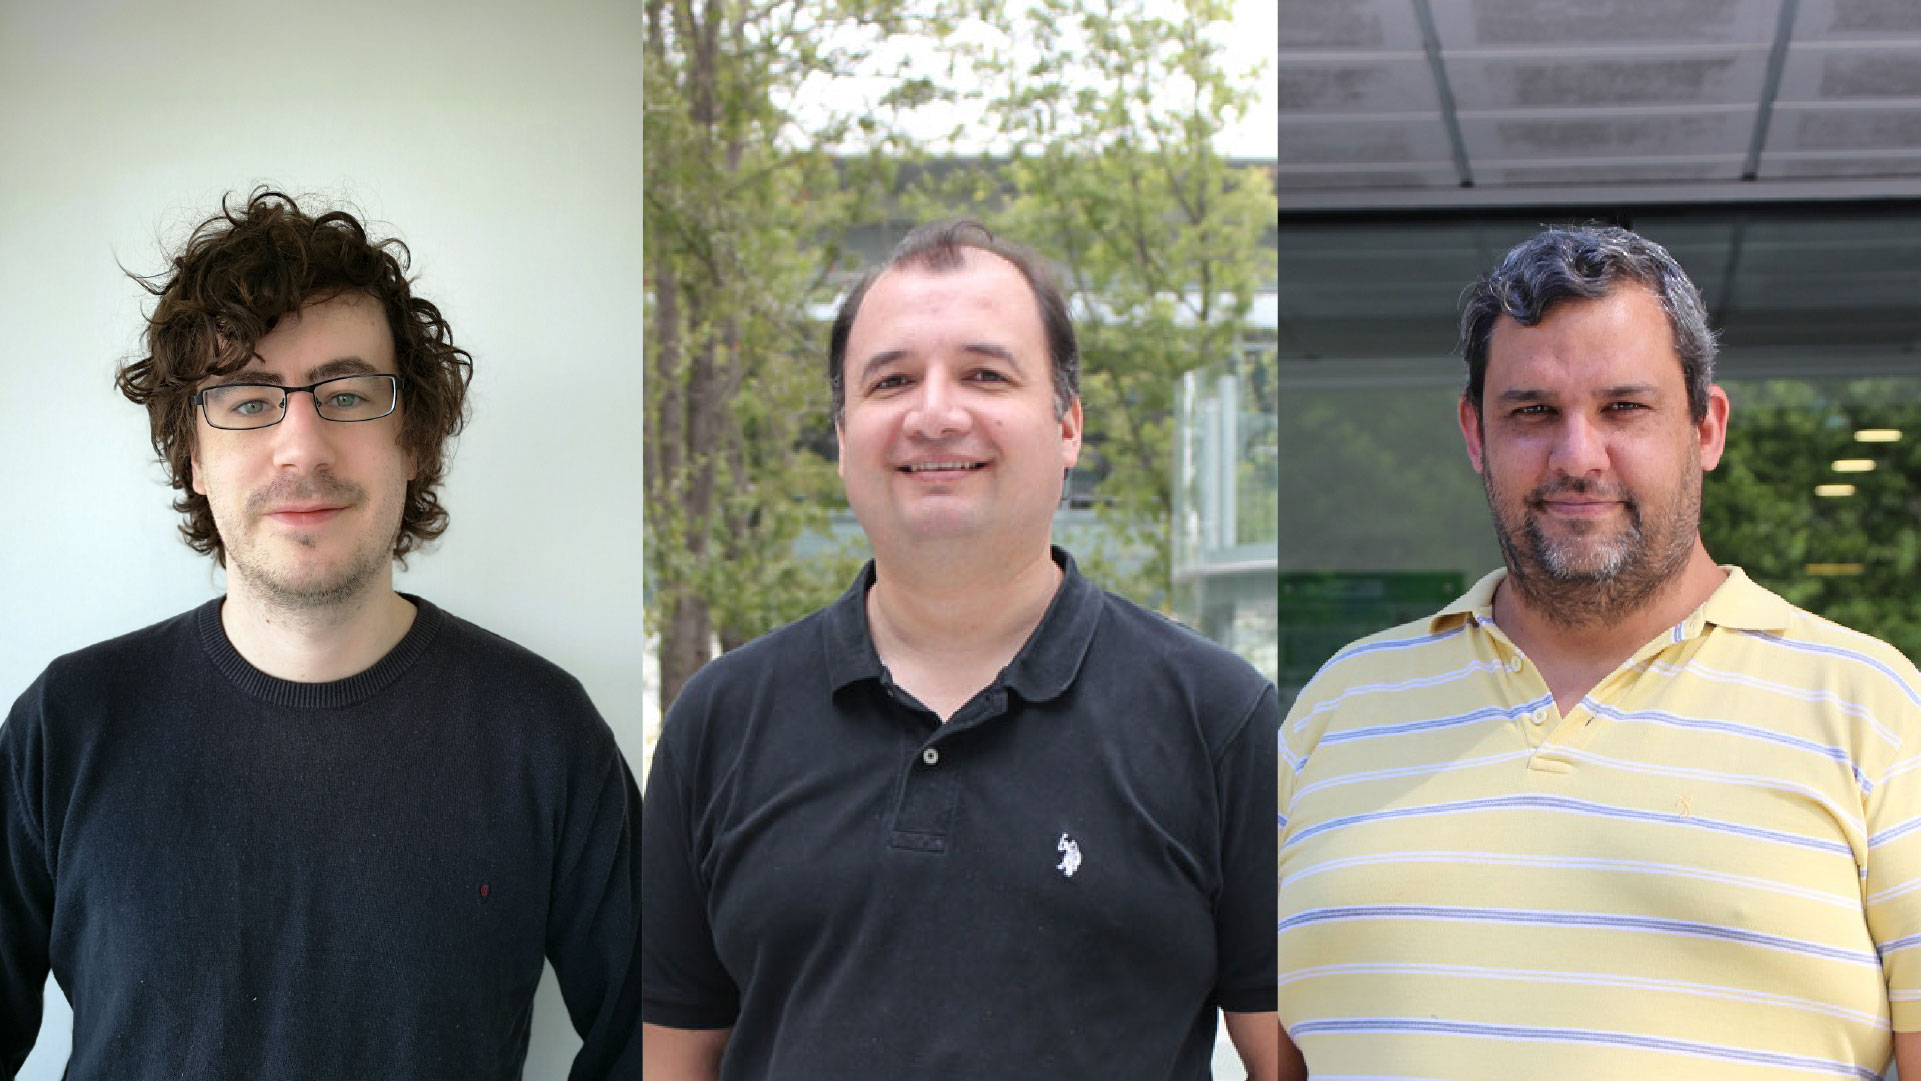 Los profesores del DCC Aidan Hogan, Benjamín Bustos y Gonzalo Navarro, participan en el desarrollo de este trabajo científico que será presentado en ACM SIGMOD, una de las conferencias principales de bases de datos.